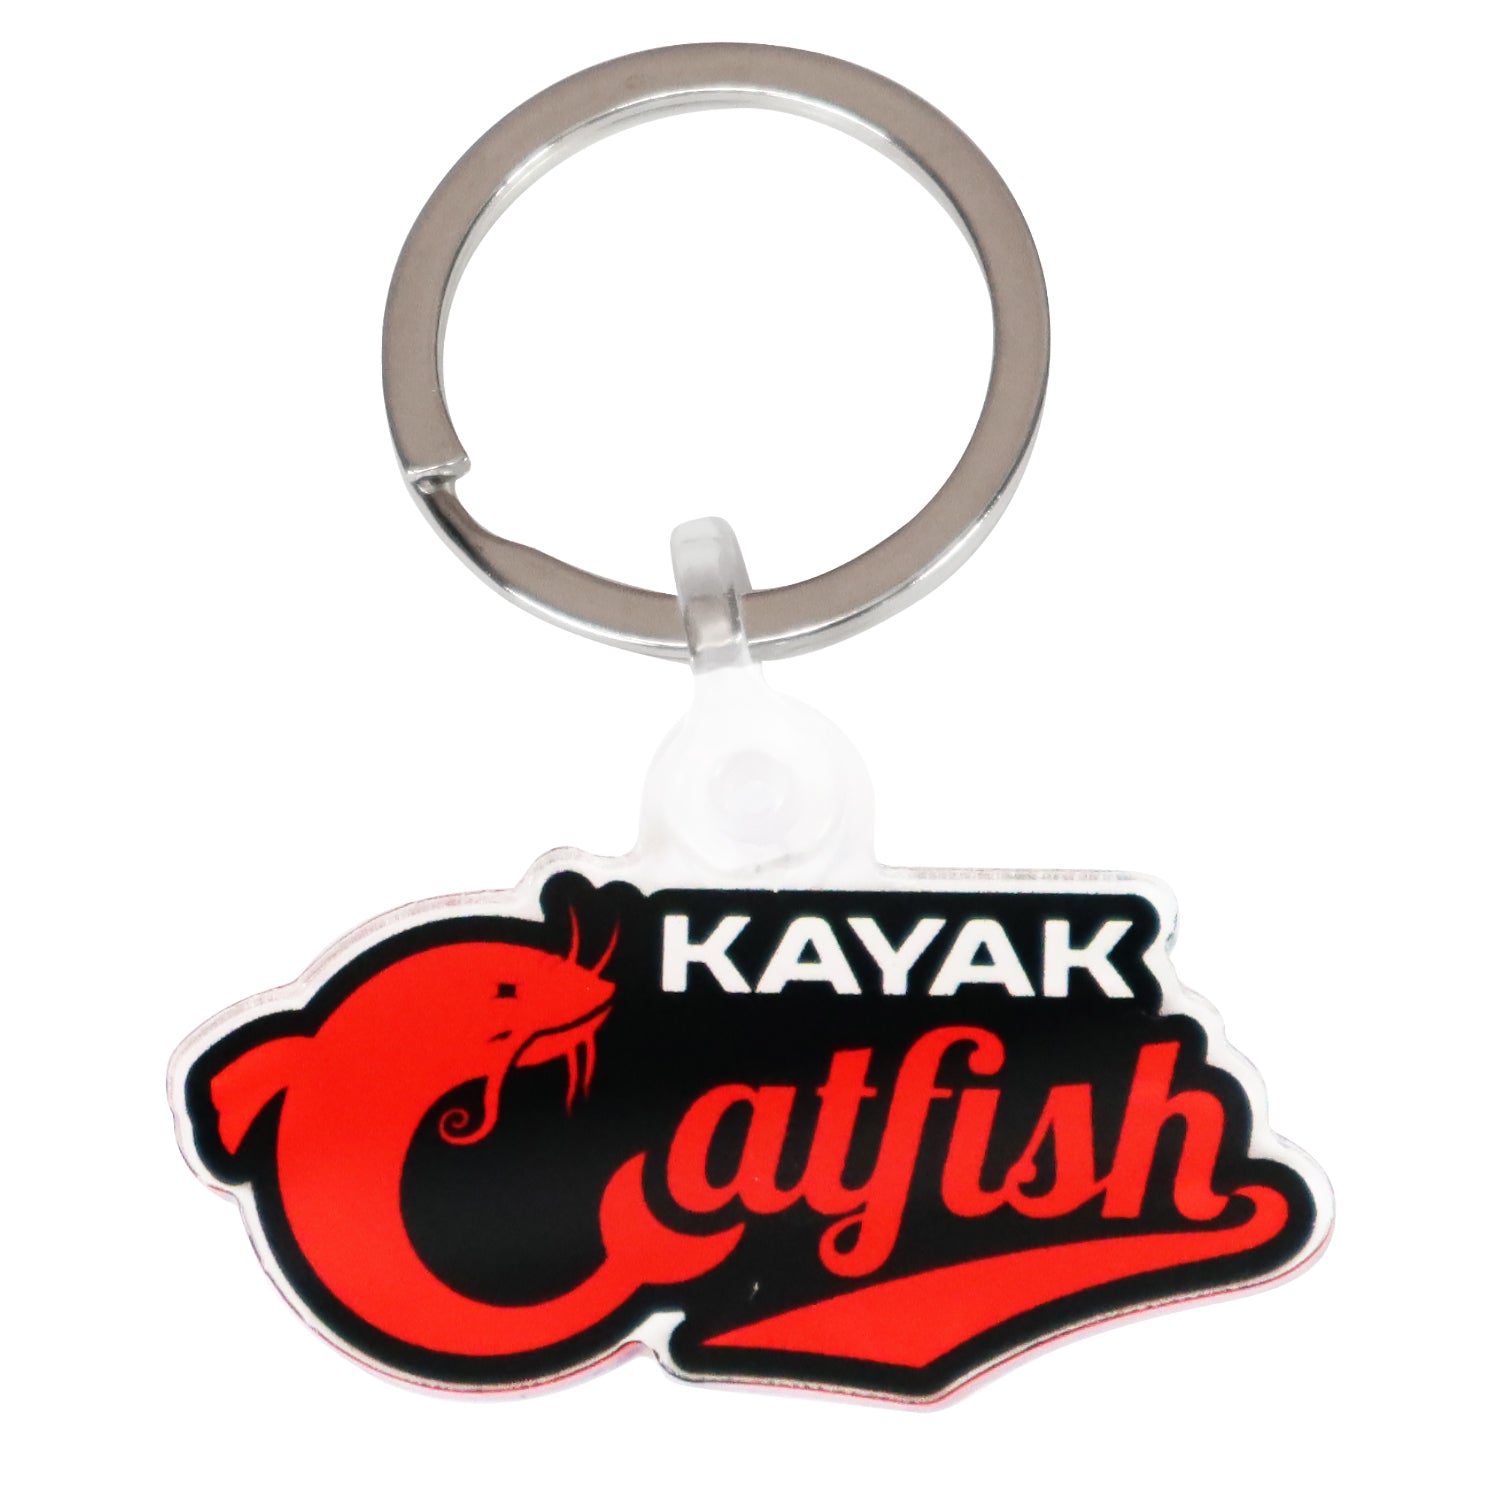 Kayak Catfish Collector Keychain by 's Kayak Catfish